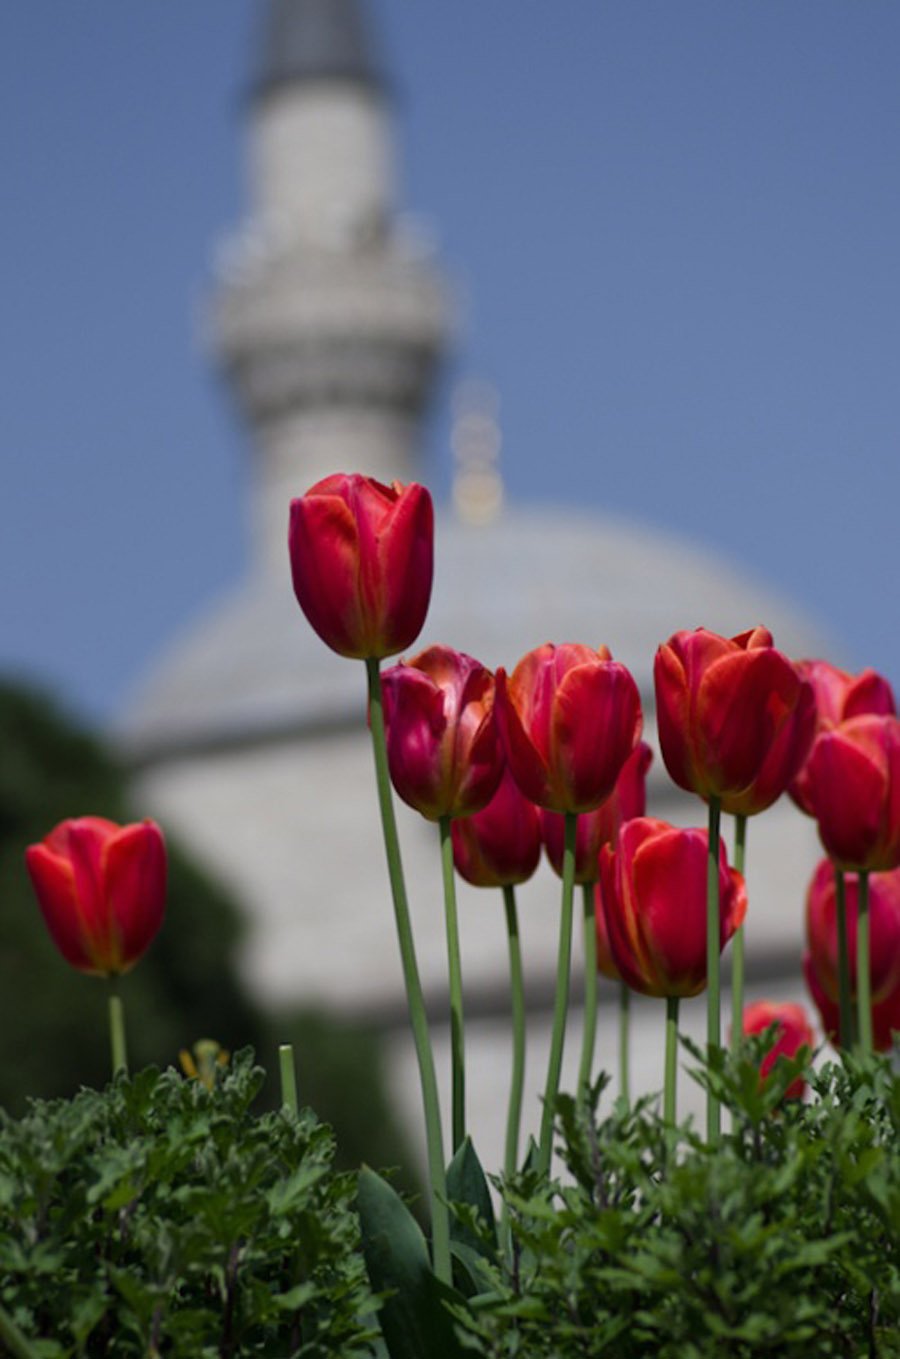 Султанахмет Стамбул тюльпаны